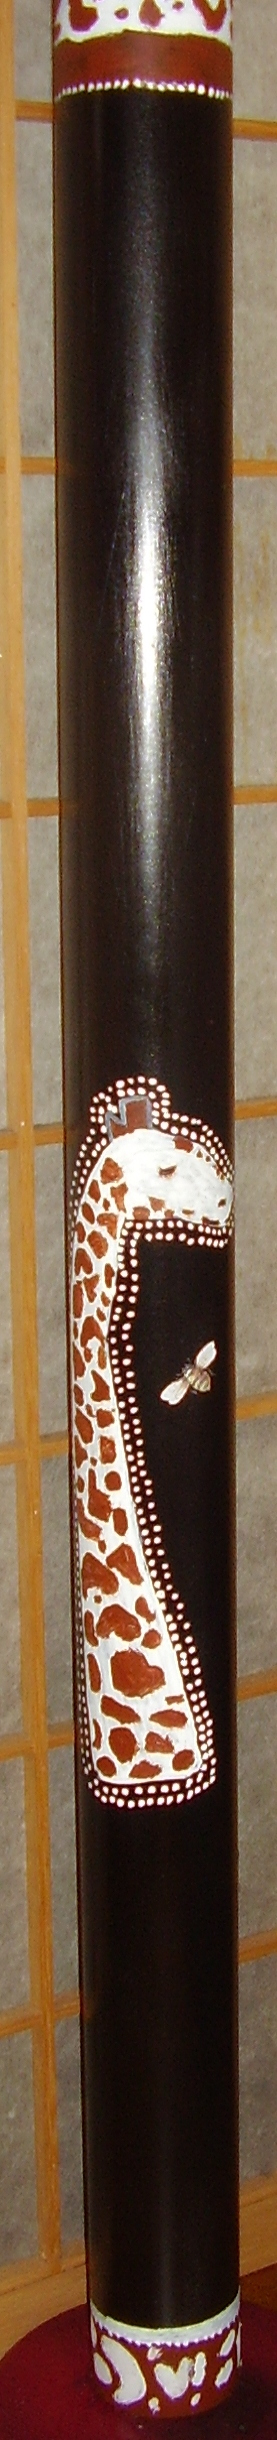 giraffe full on black